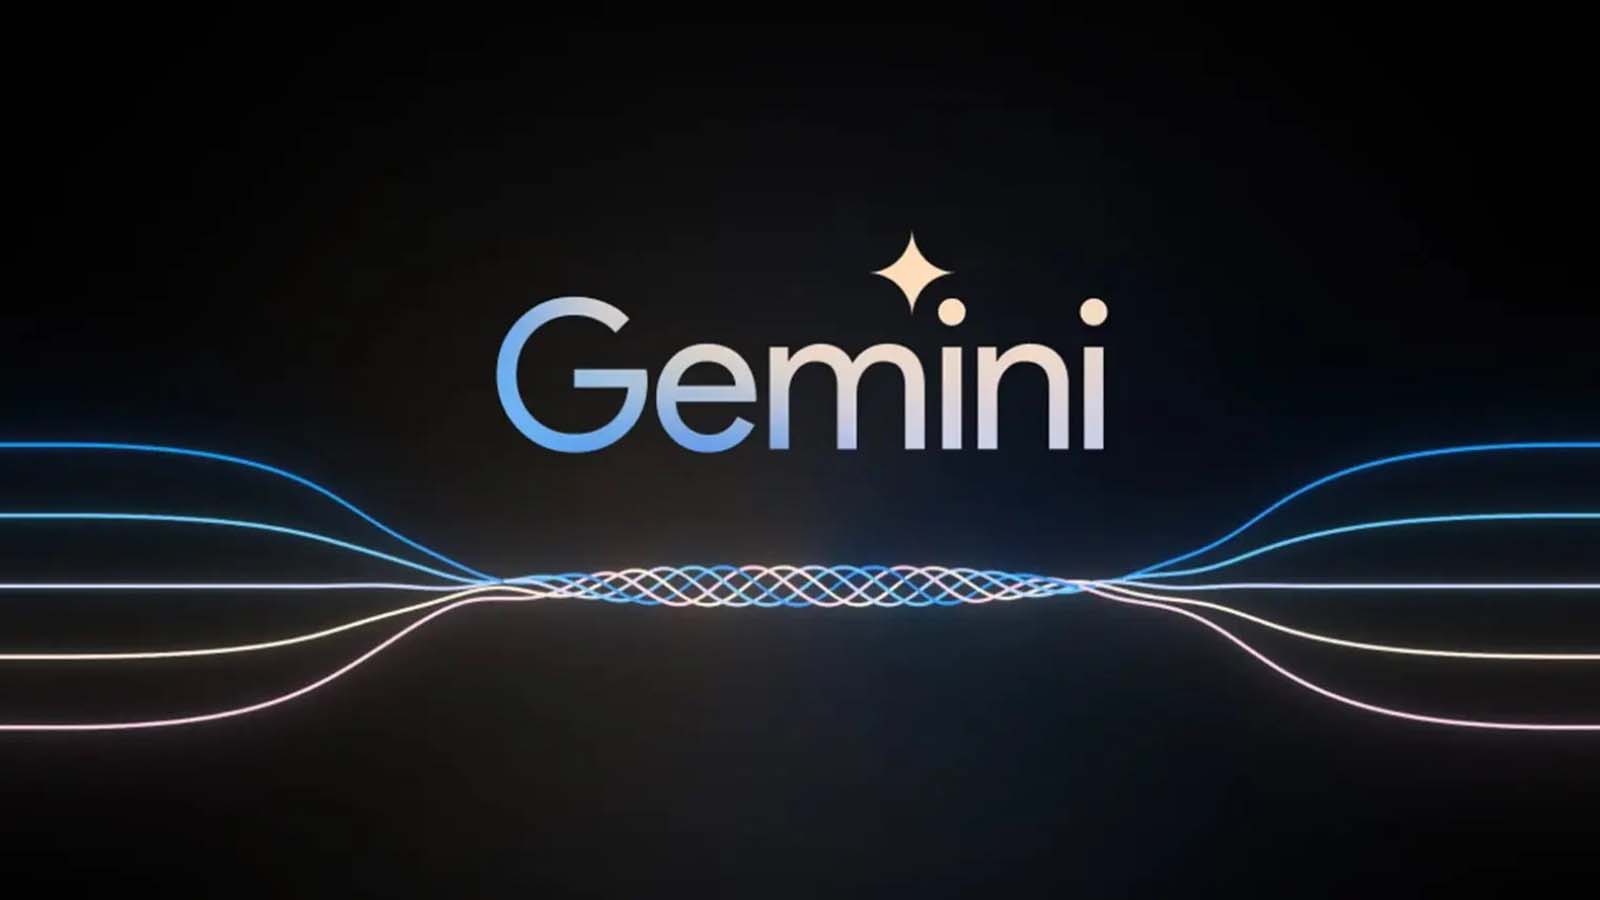 Google Bard vs. Gemini: la rivoluzione dell'assistenza virtuale